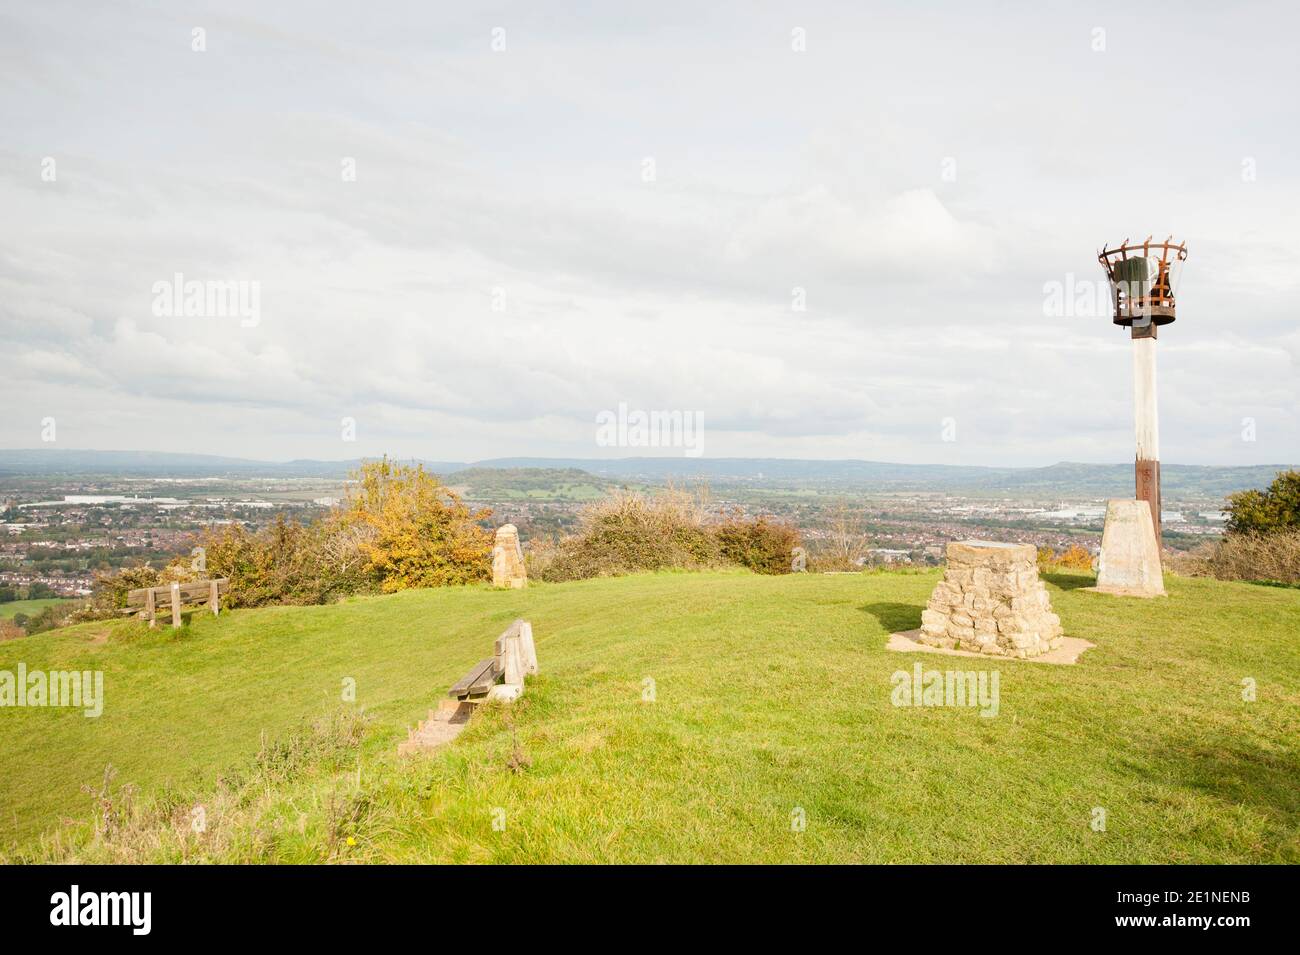 El faro del milenio, trig point y vista a través de la ciudad de Gloucester y más allá desde la cima del Robinswood Hill Country Park, Gloucester, Inglaterra, Foto de stock